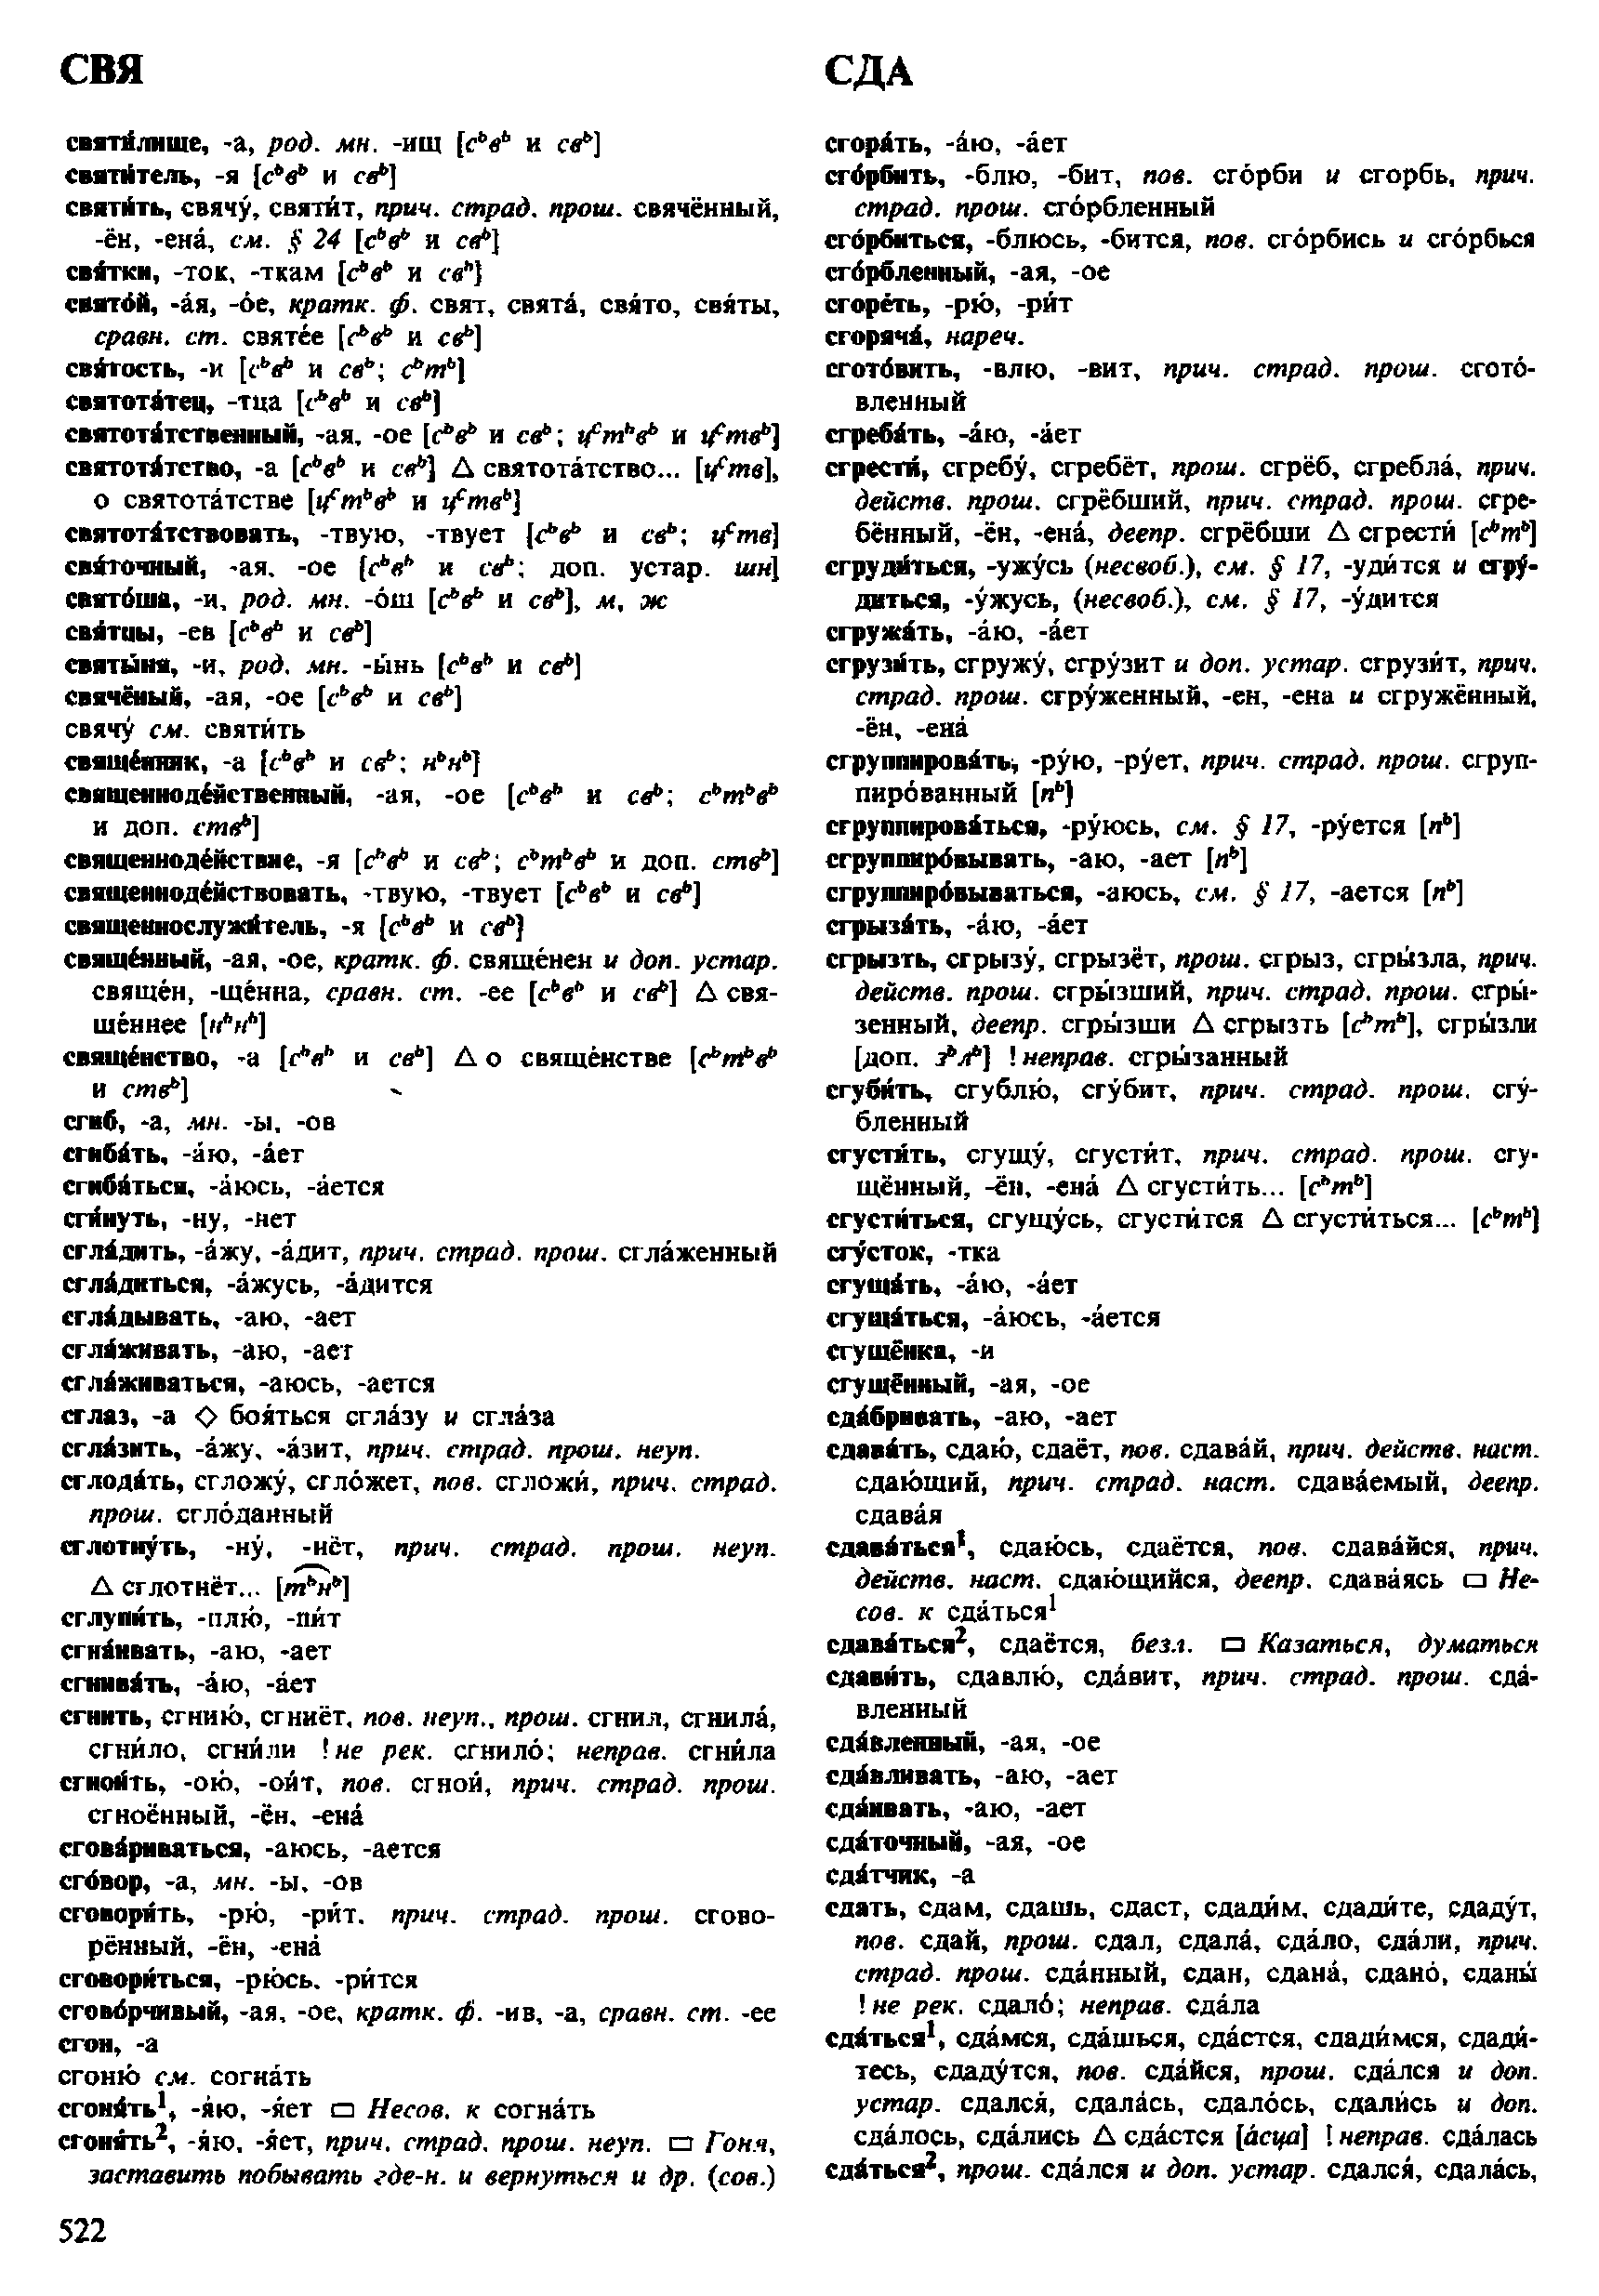 Фотокопия pdf / скан страницы 522 орфоэпического словаря под редакцией Аванесова (4 издание, 1988 год)